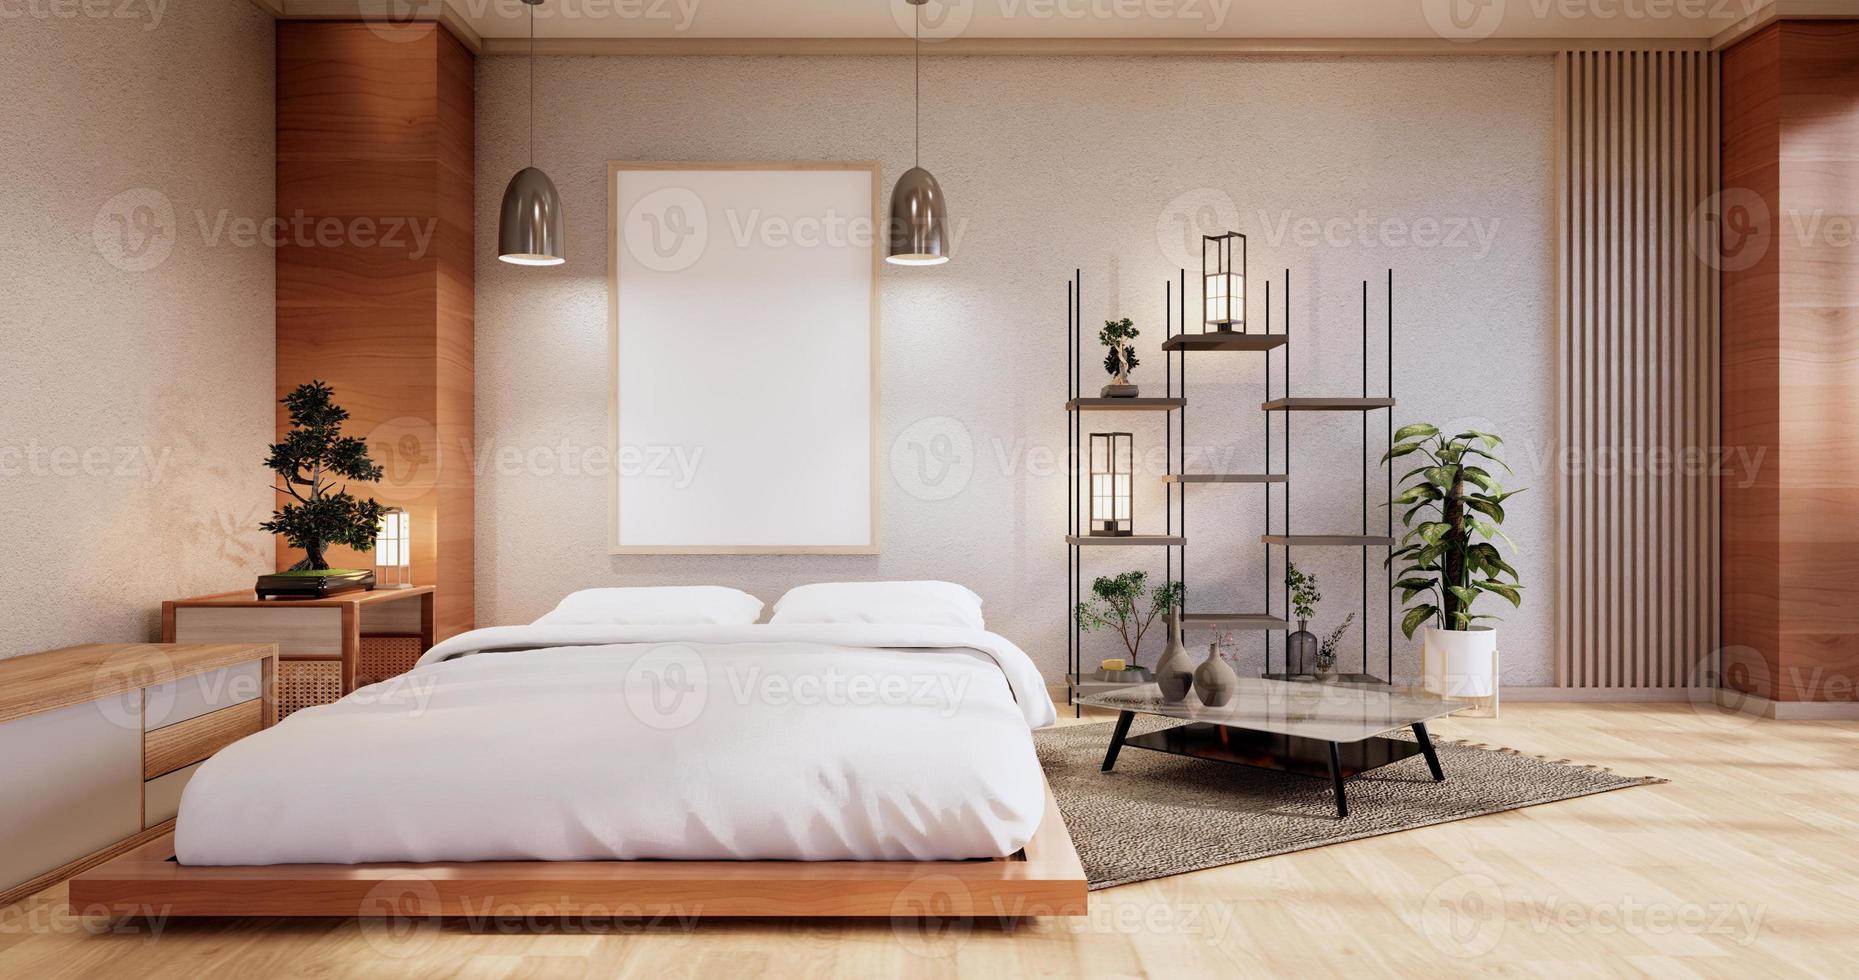 interieur mock up met zen bedplant en decoratie in japanse slaapkamer. 3D-rendering. foto